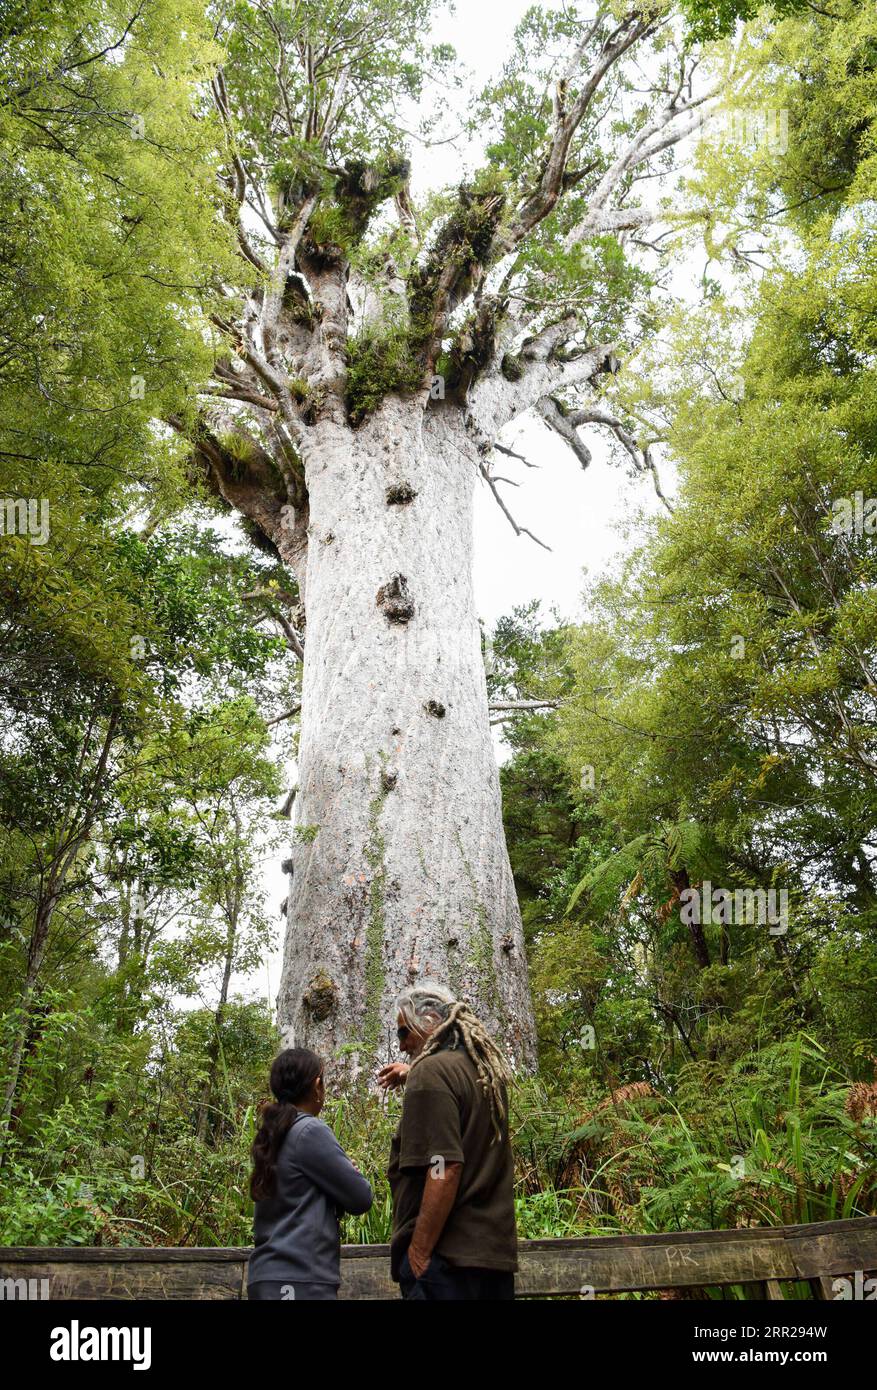 201006 -- NORTHLAND, 6 ottobre 2020 -- la gente vede un albero di kauri nella foresta di Waipoua nel Northland, nuova Zelanda, 6 ottobre 2020. Waipoua, e le foreste adiacenti, costituiscono il più grande tratto rimanente di foresta nativa nel Northland, nonché la sede degli alberi di kauri. NEW ZEALAND-WAIPOUA FOREST-KAURI TREES GUOXLEI PUBLICATIONXNOTXINXCHN Foto Stock